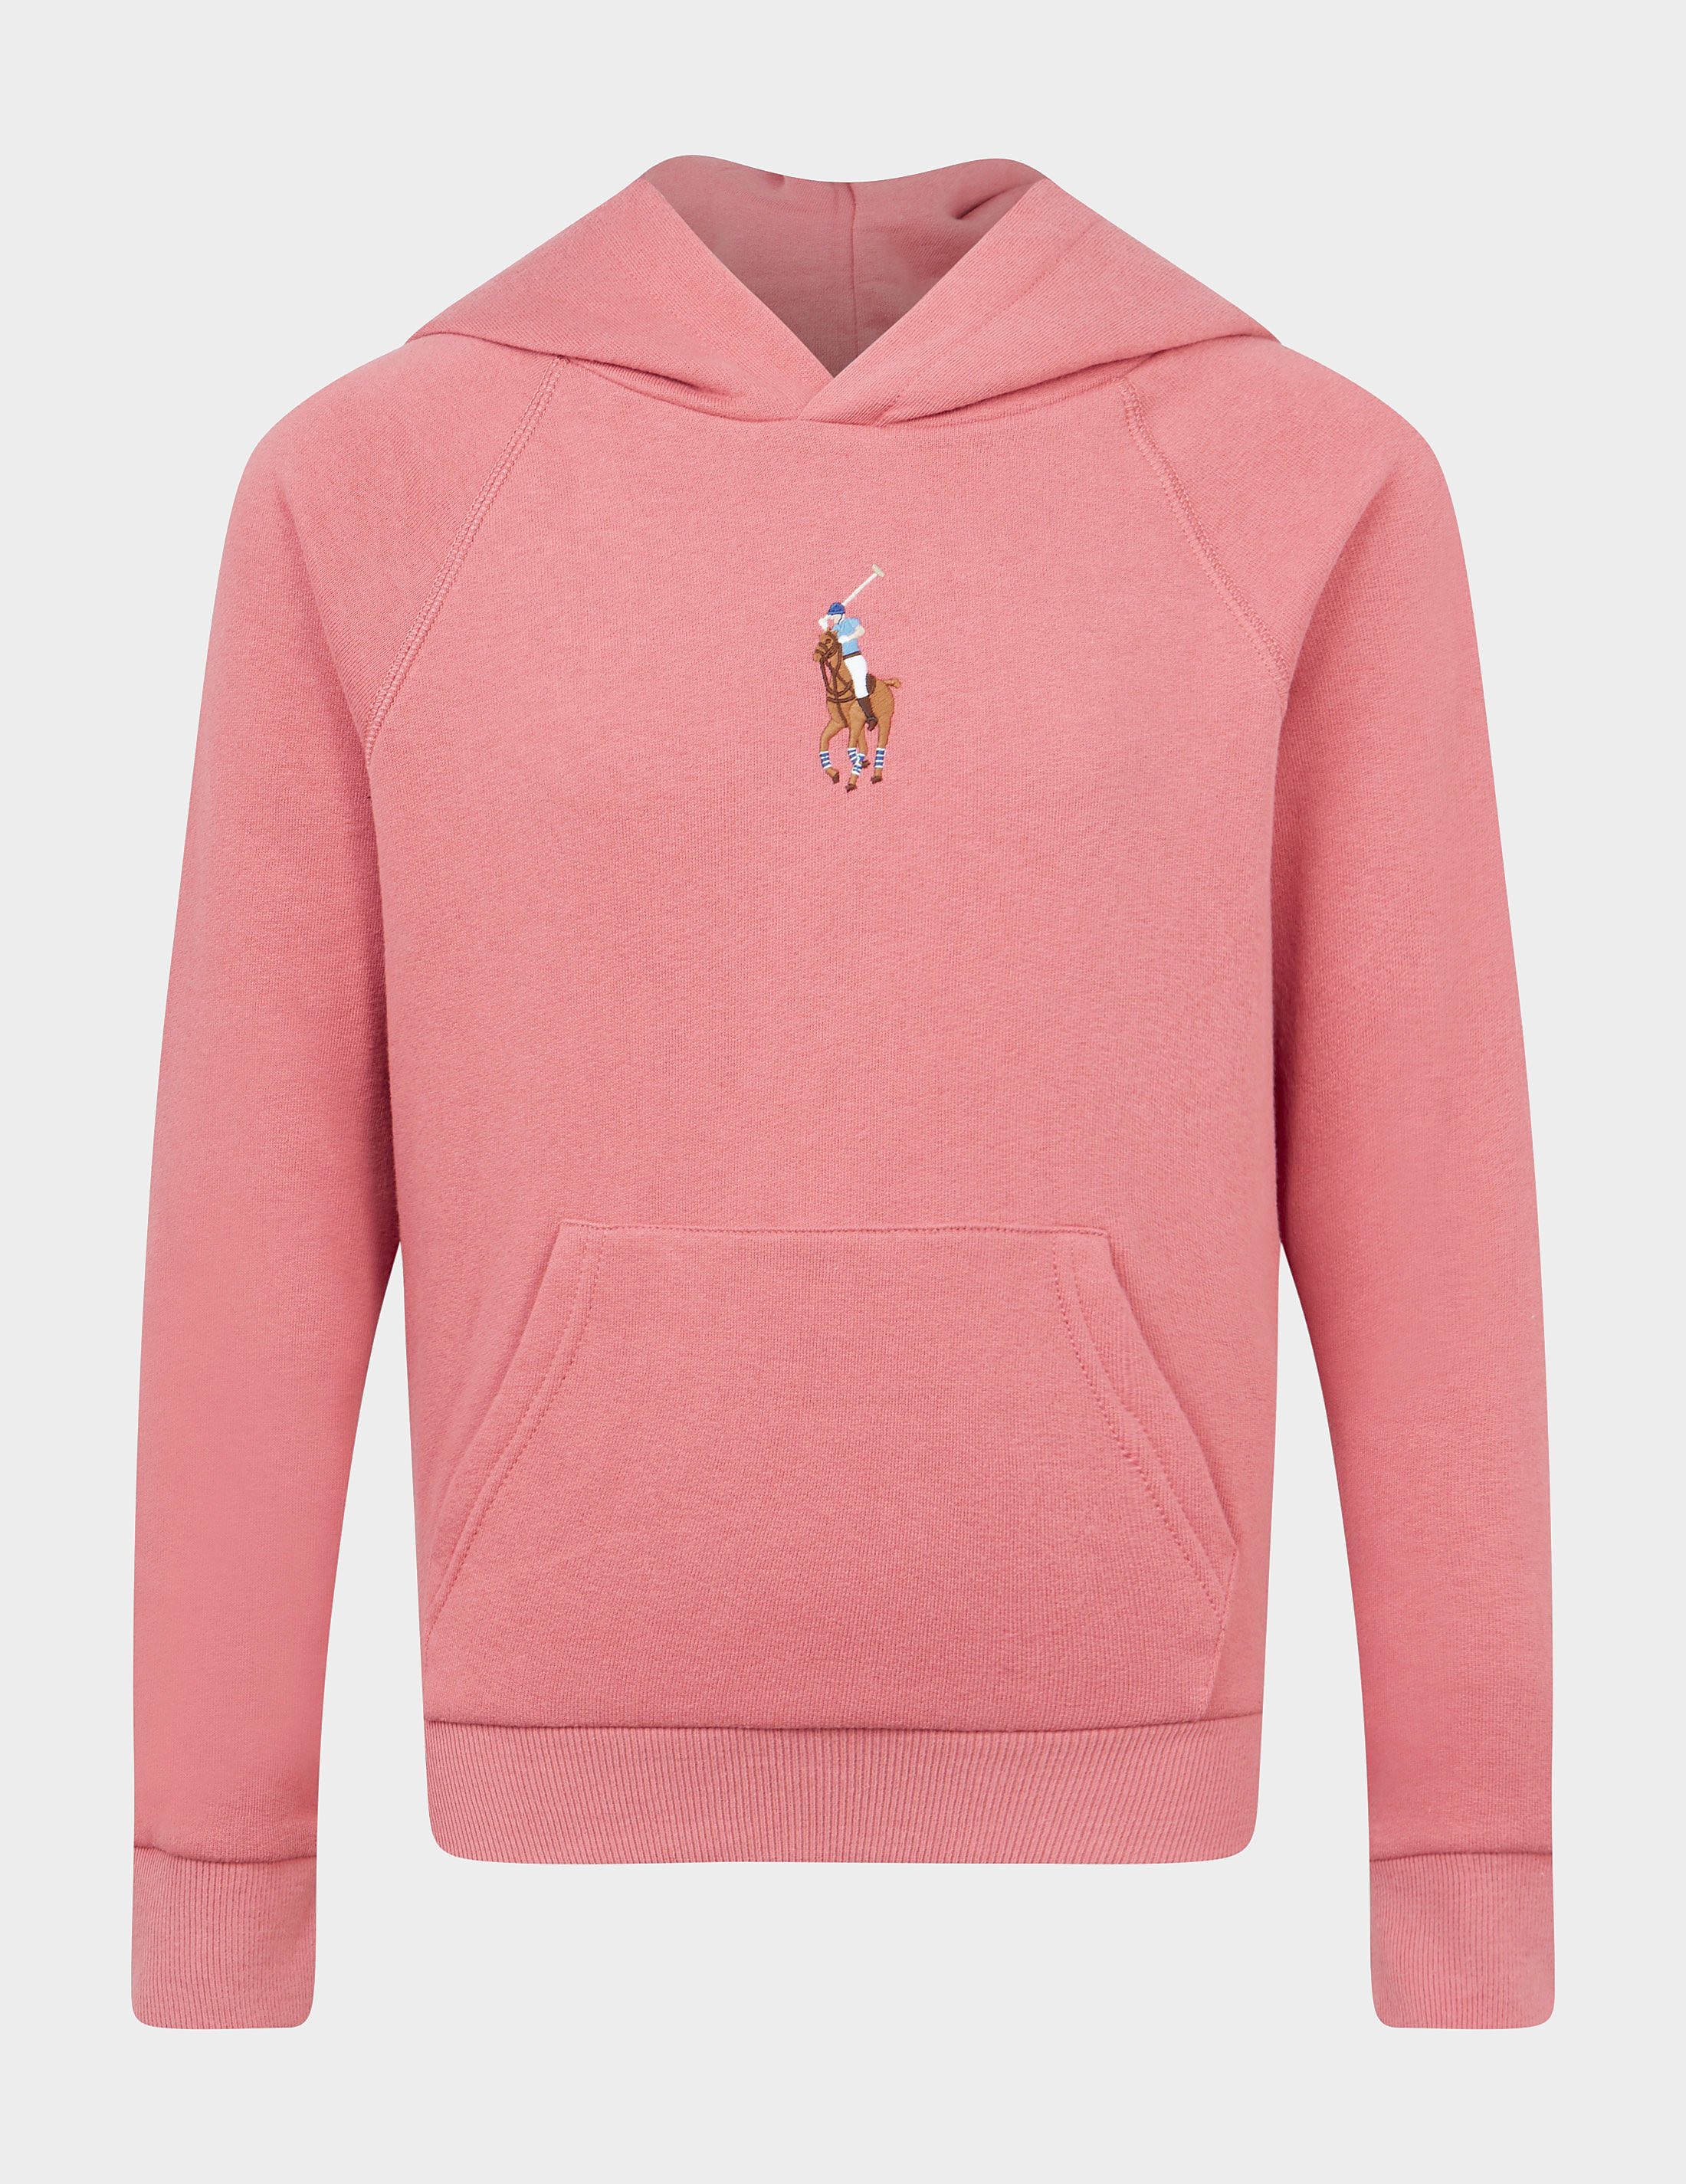 polo ralph lauren pony hoodie pink, pink